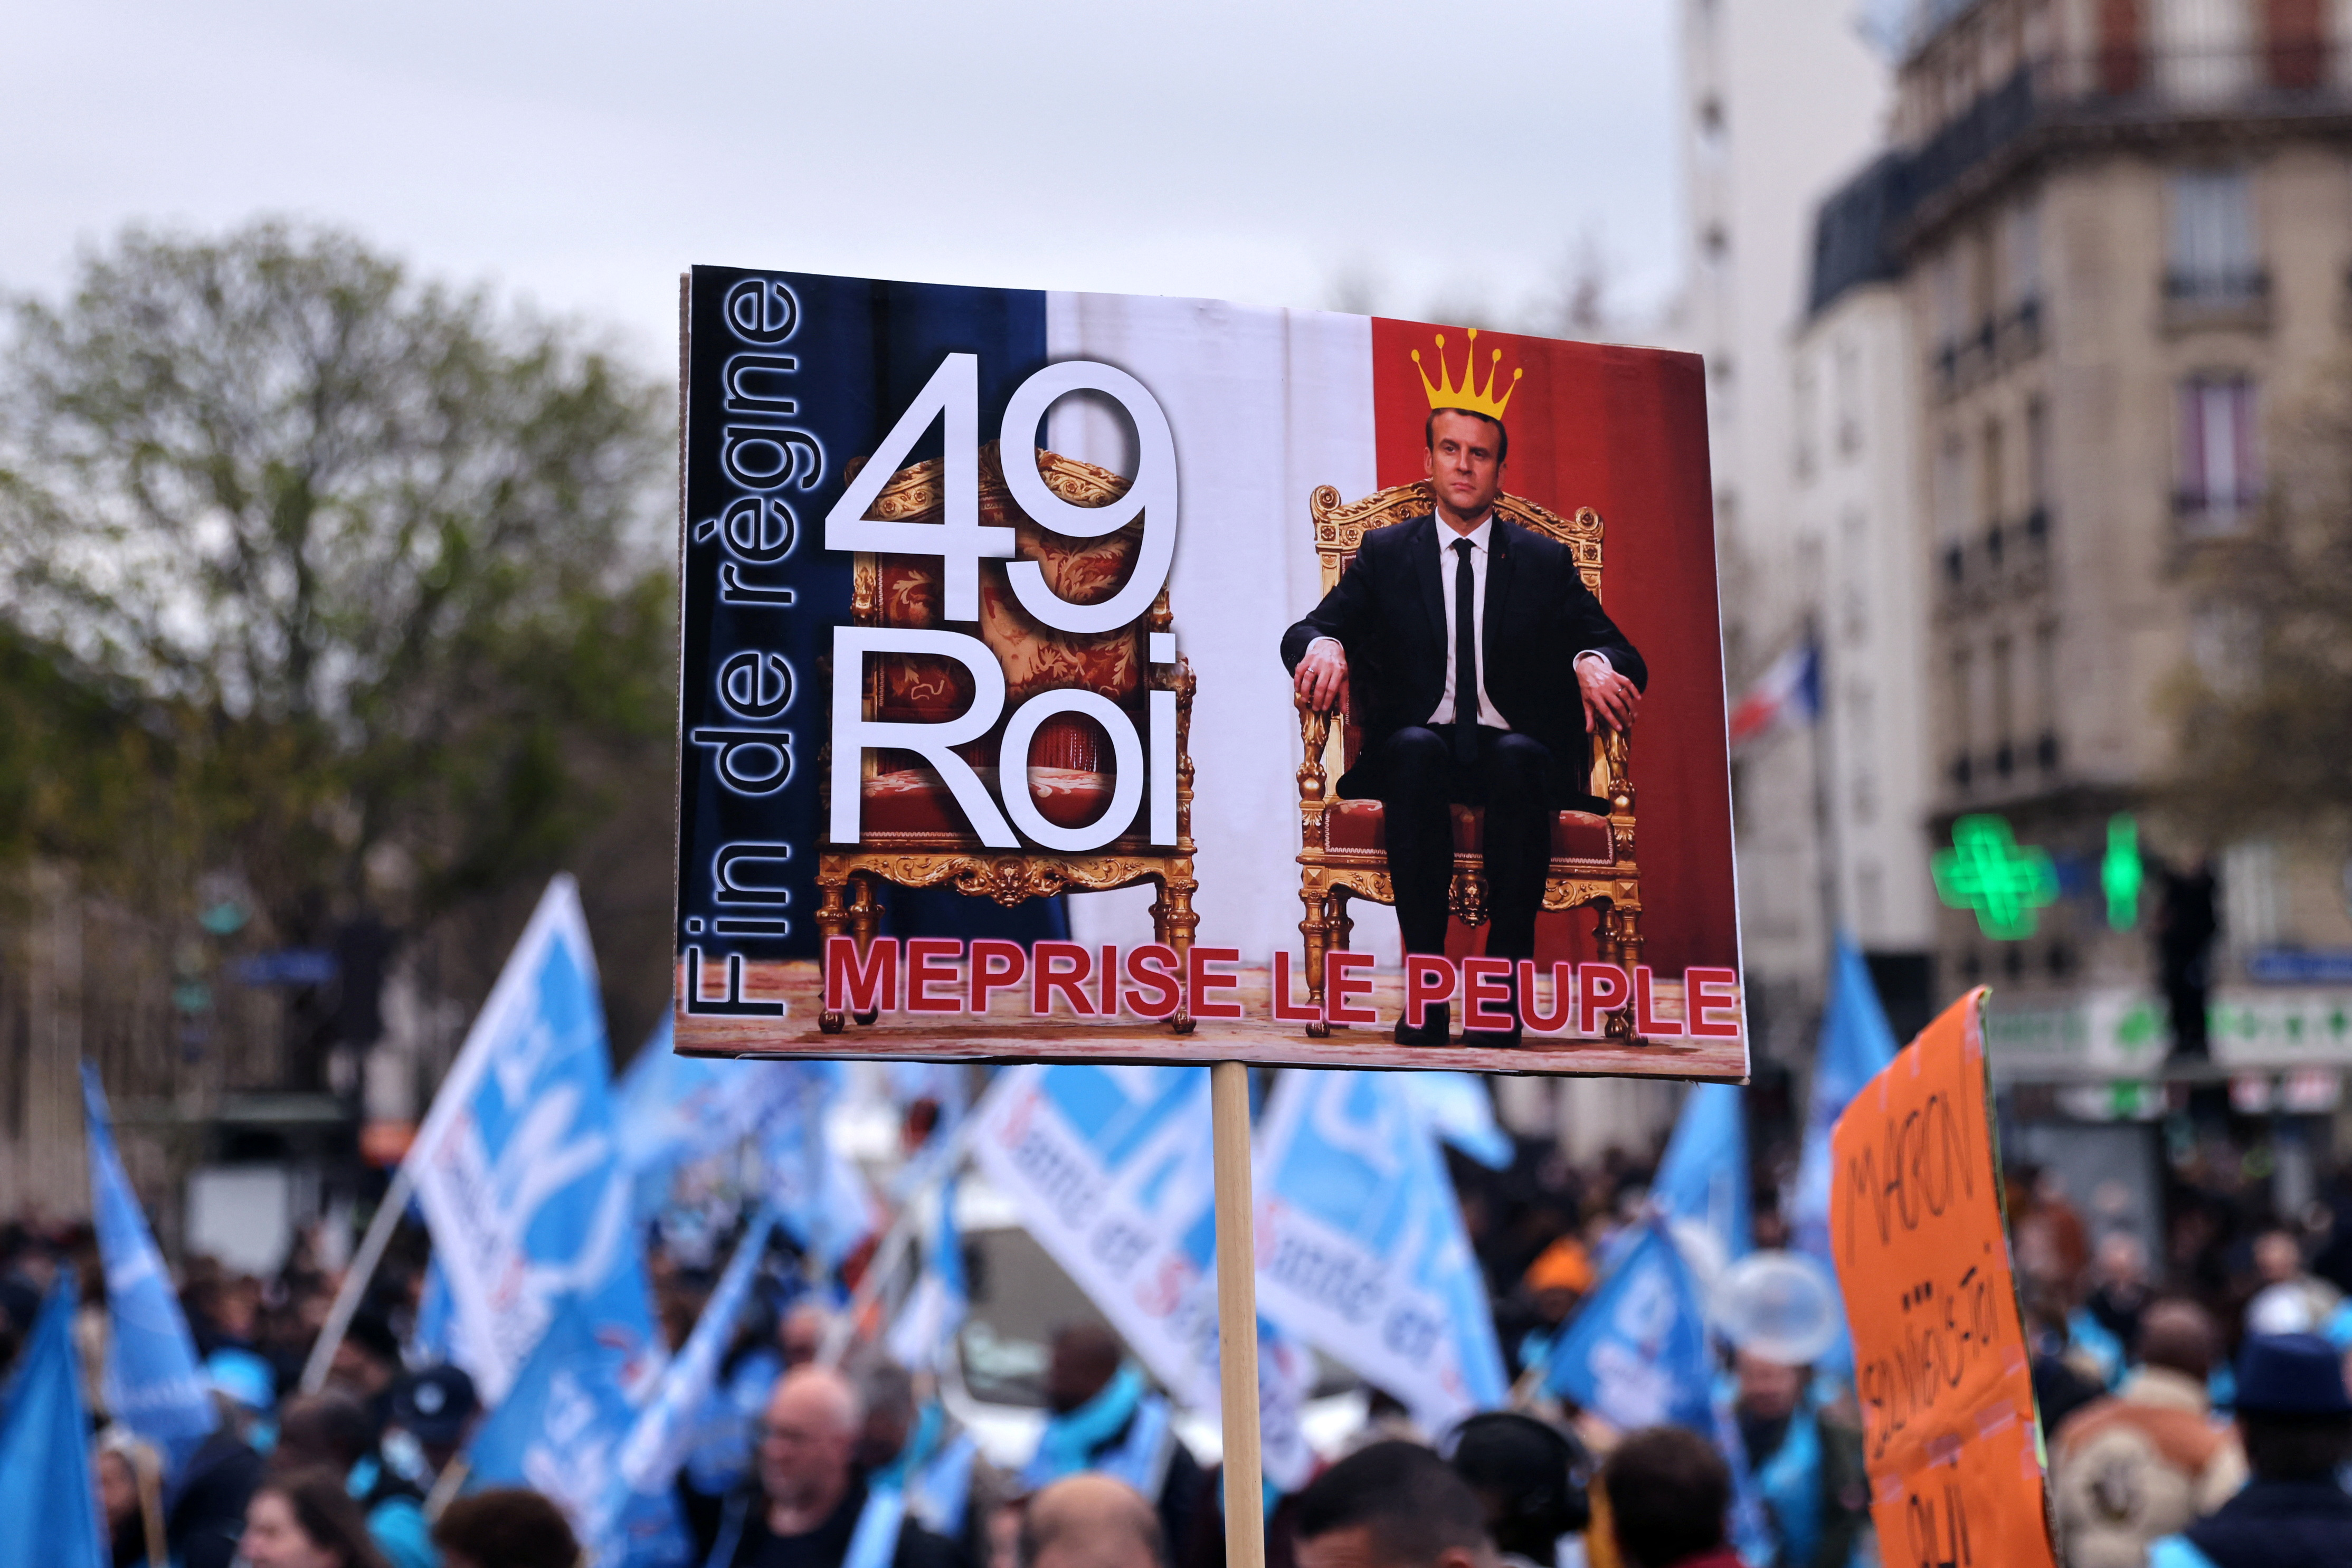 Las protestas en Francia continuan en contra de la reforma a las pensiones.   REUTERS/Nacho Doce